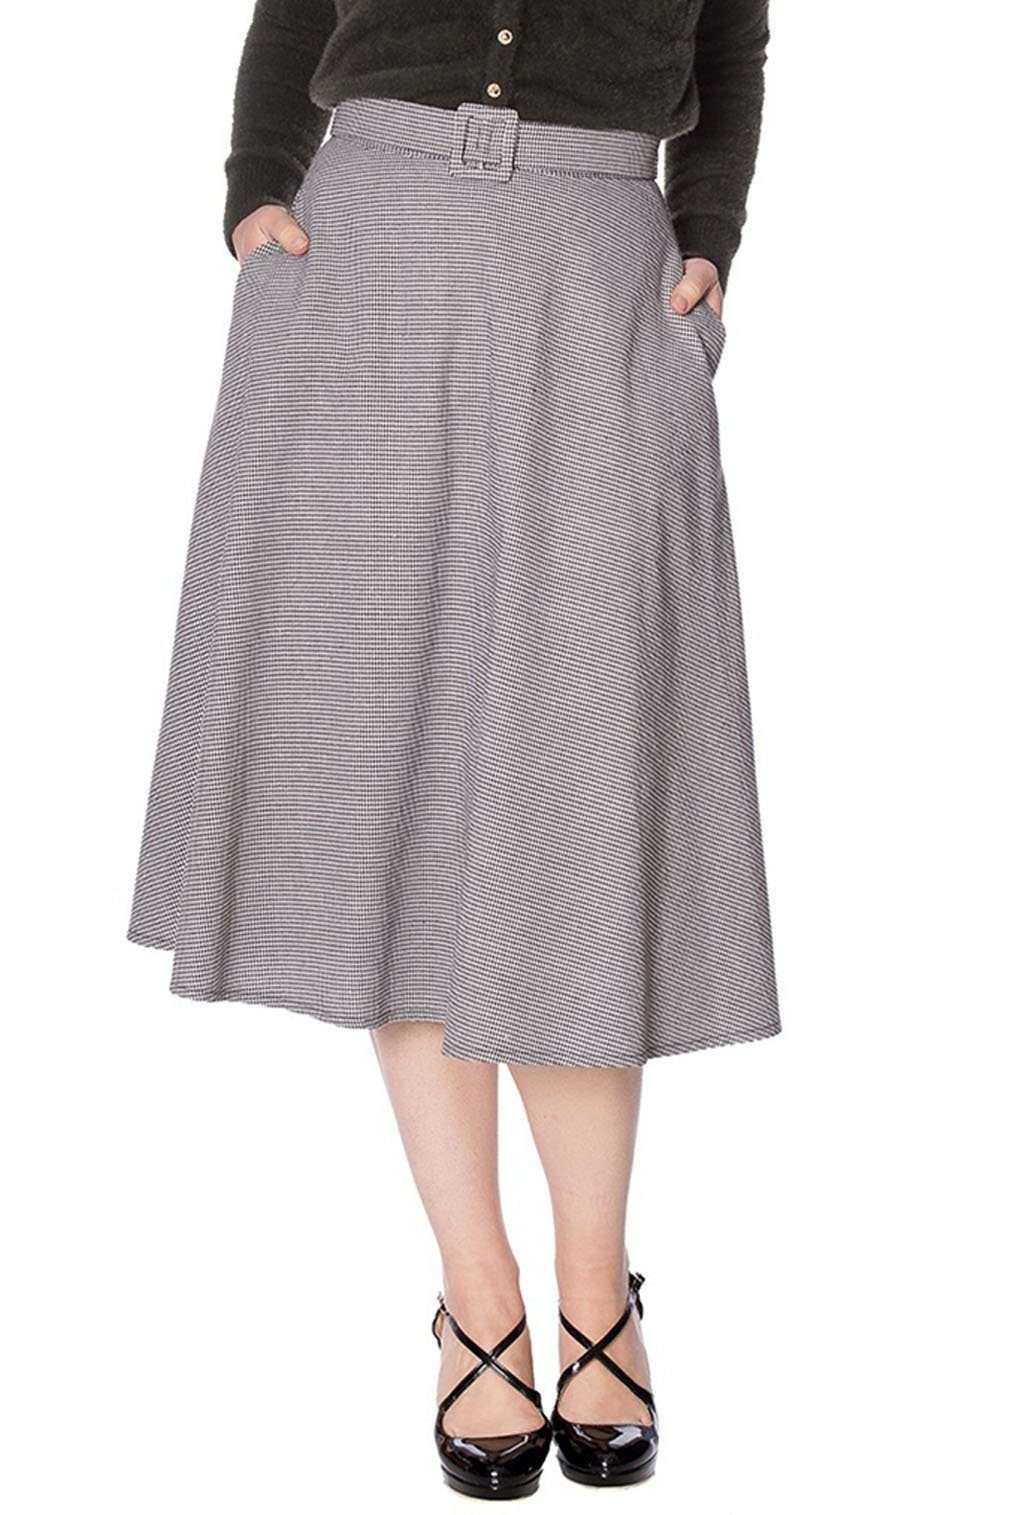 Юбка-трапеция Betty с узором «гусиные лапки» в стиле ретро, винтажная распашная юбка